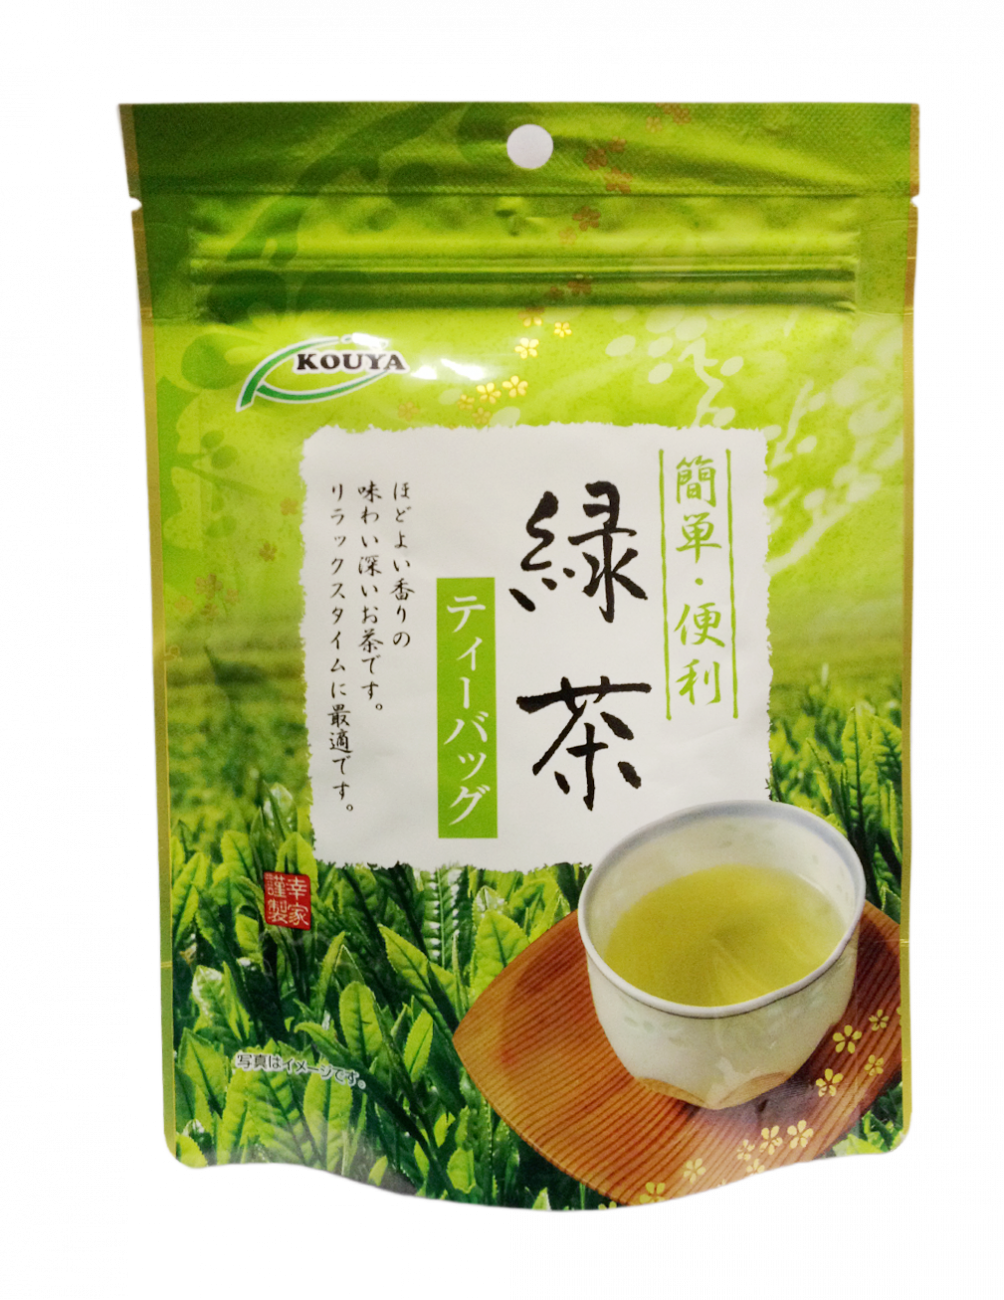 Зеленый Чай В Пакетиках Фото